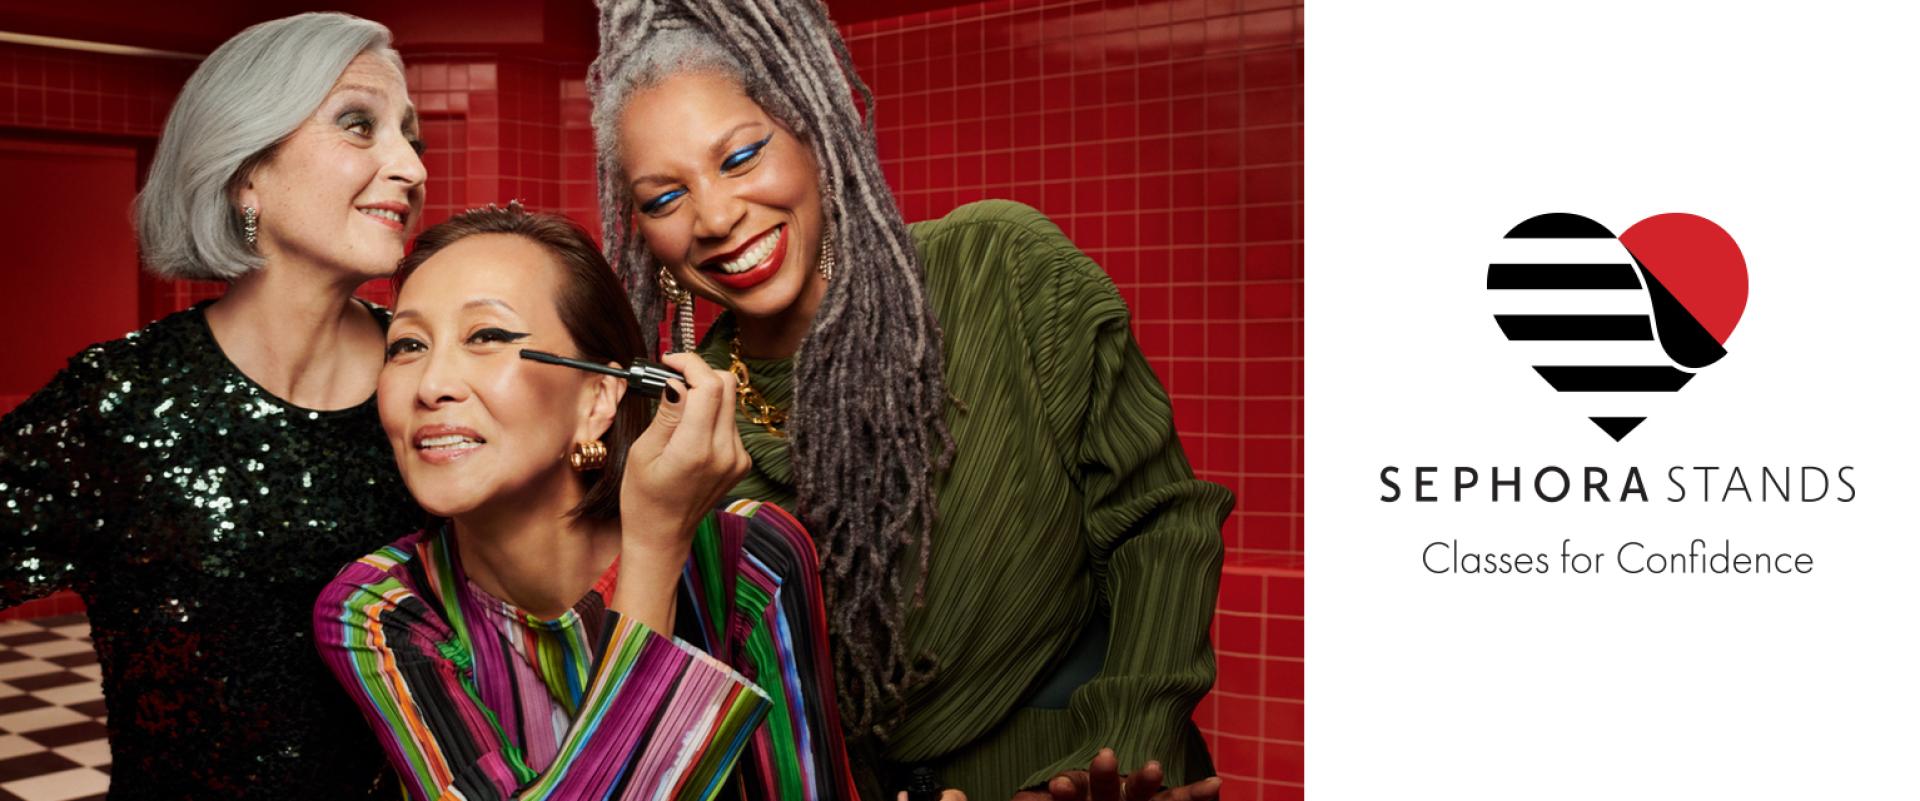 Sephora rozpoczyna całoroczny program wzmacniających pewność siebie warsztatów makijażowych